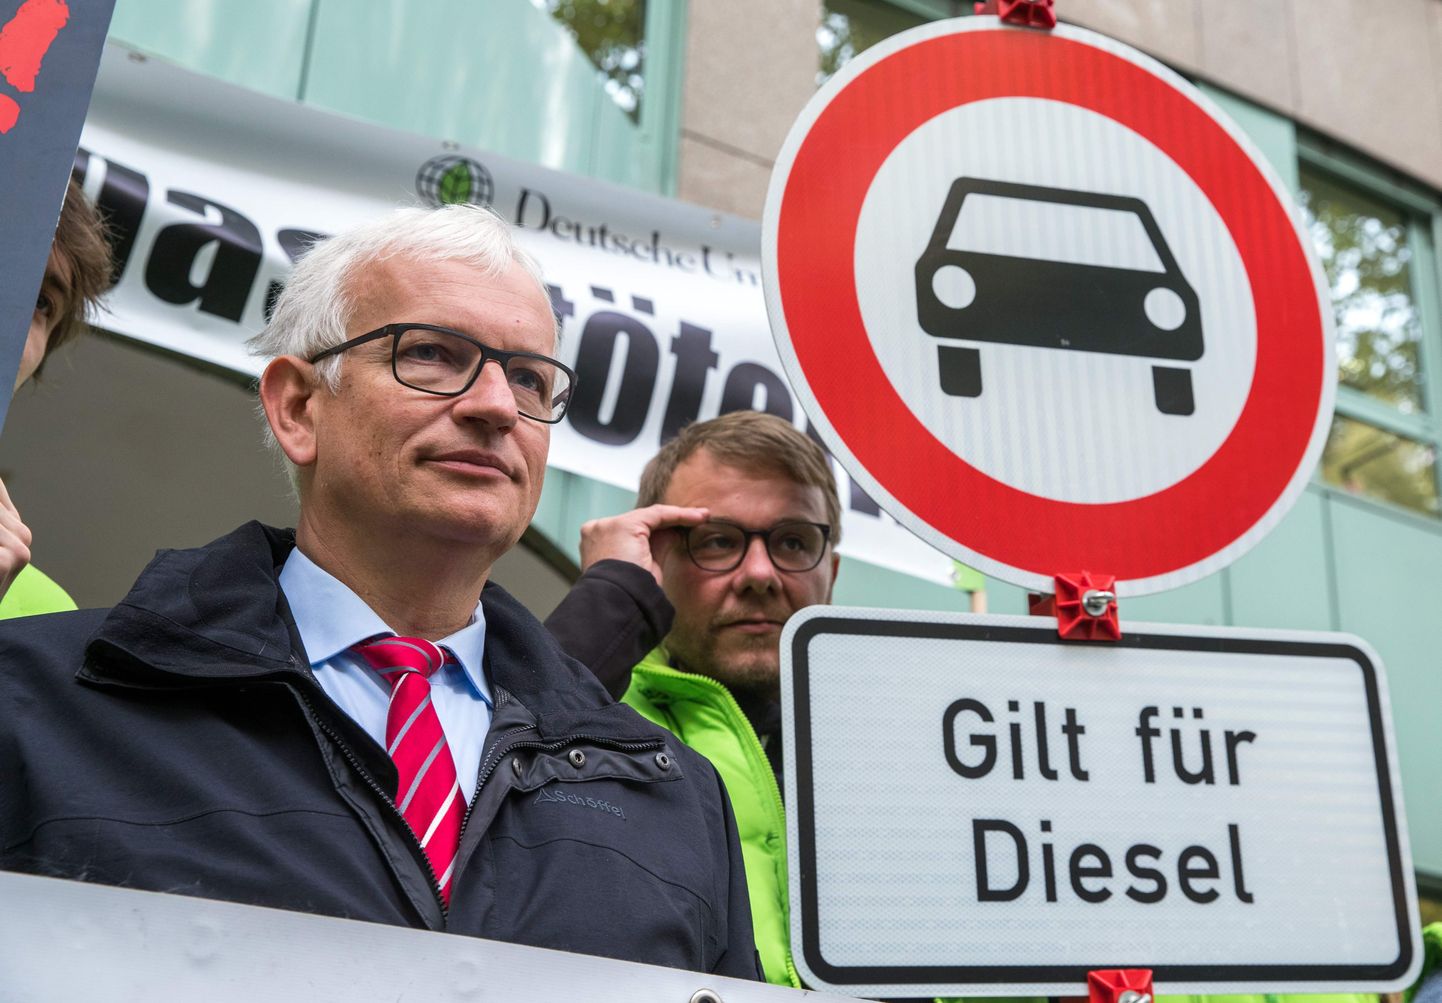 Vācijas dabasdraugu grupas Deutsche Umwelthilfe (DUH) vadītājs Jirgens Rešs (Juergen Resch) ar ceļazīmi, kas aizliedz iebraukt dīzeļautomobiļiem